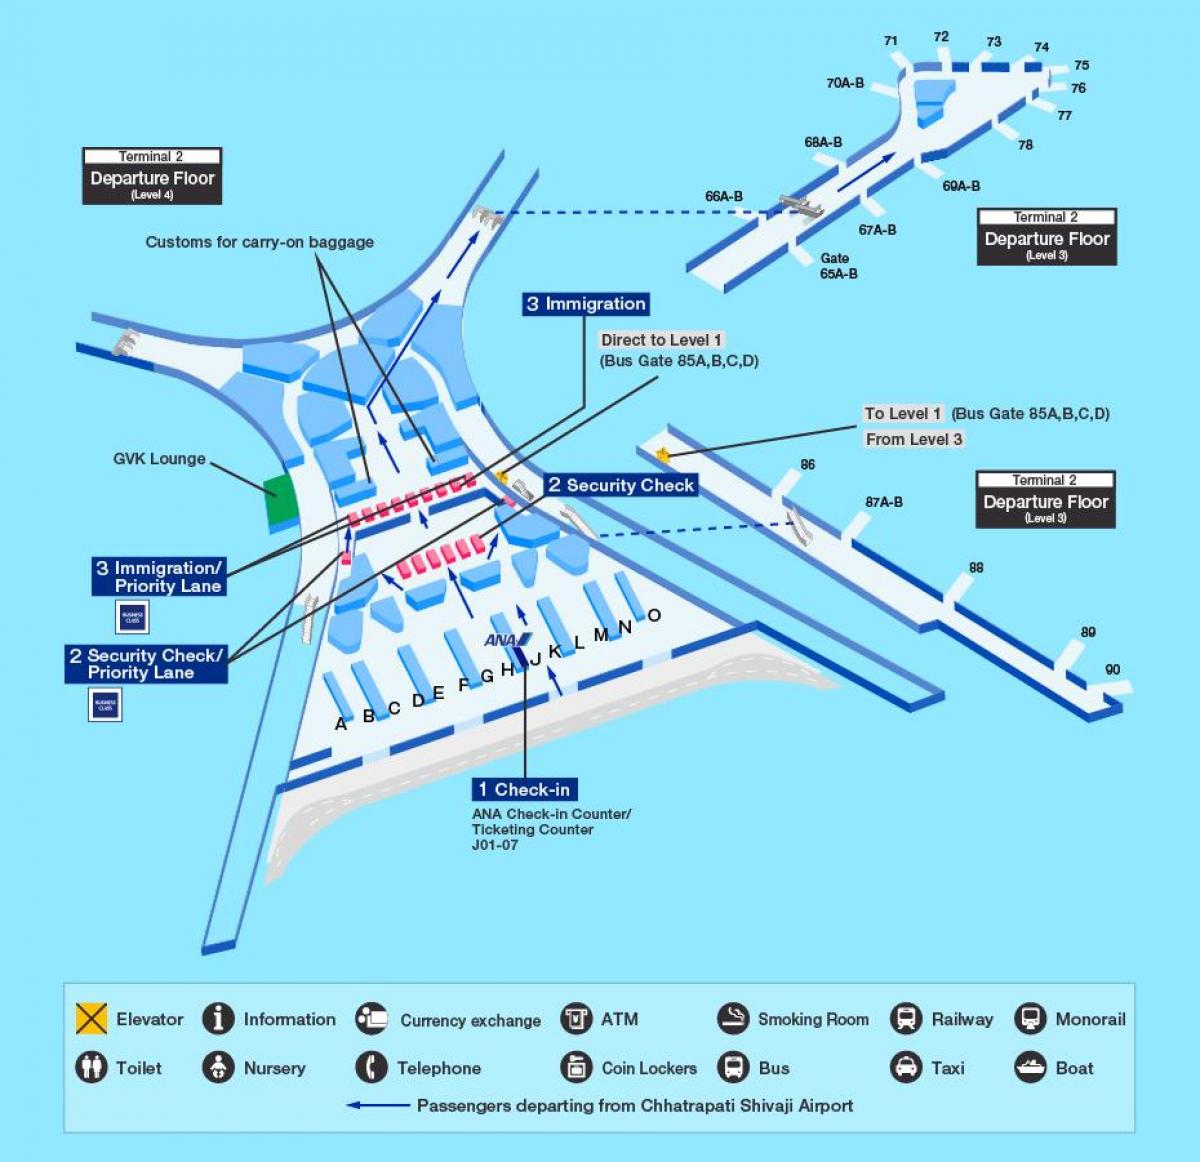 Mumbai international airport terminal 2 ramani